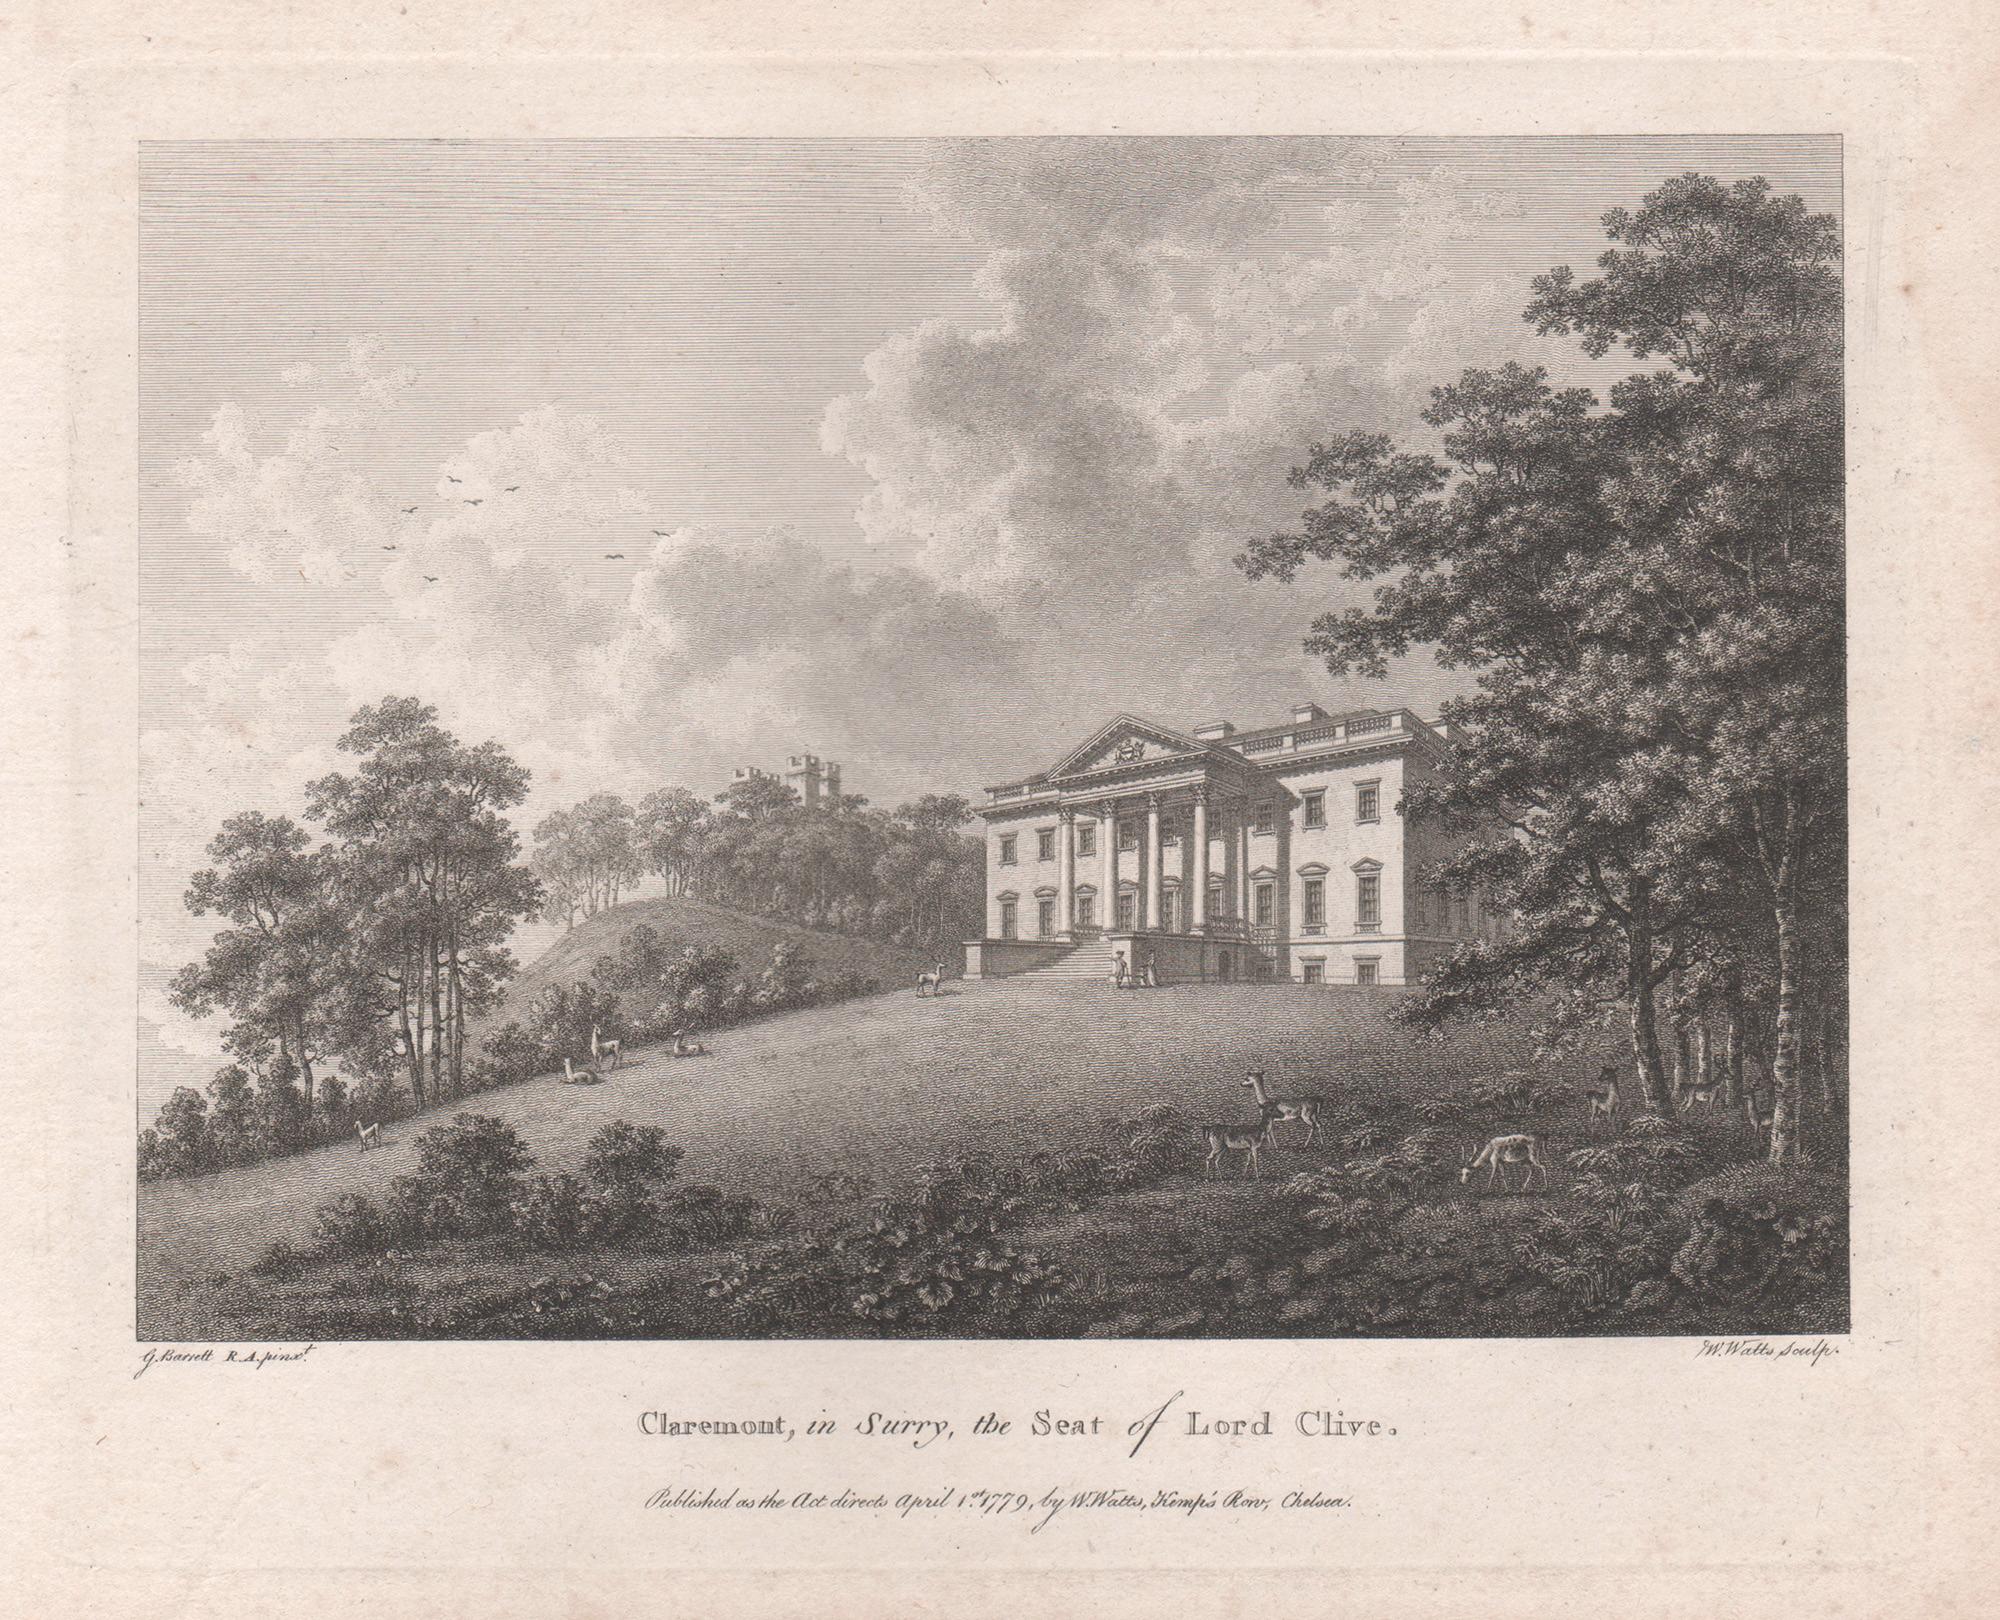 William Watts Landscape Print – Claremont, in Surrey, englische Landhausgravur des 18. Jahrhunderts, 1782